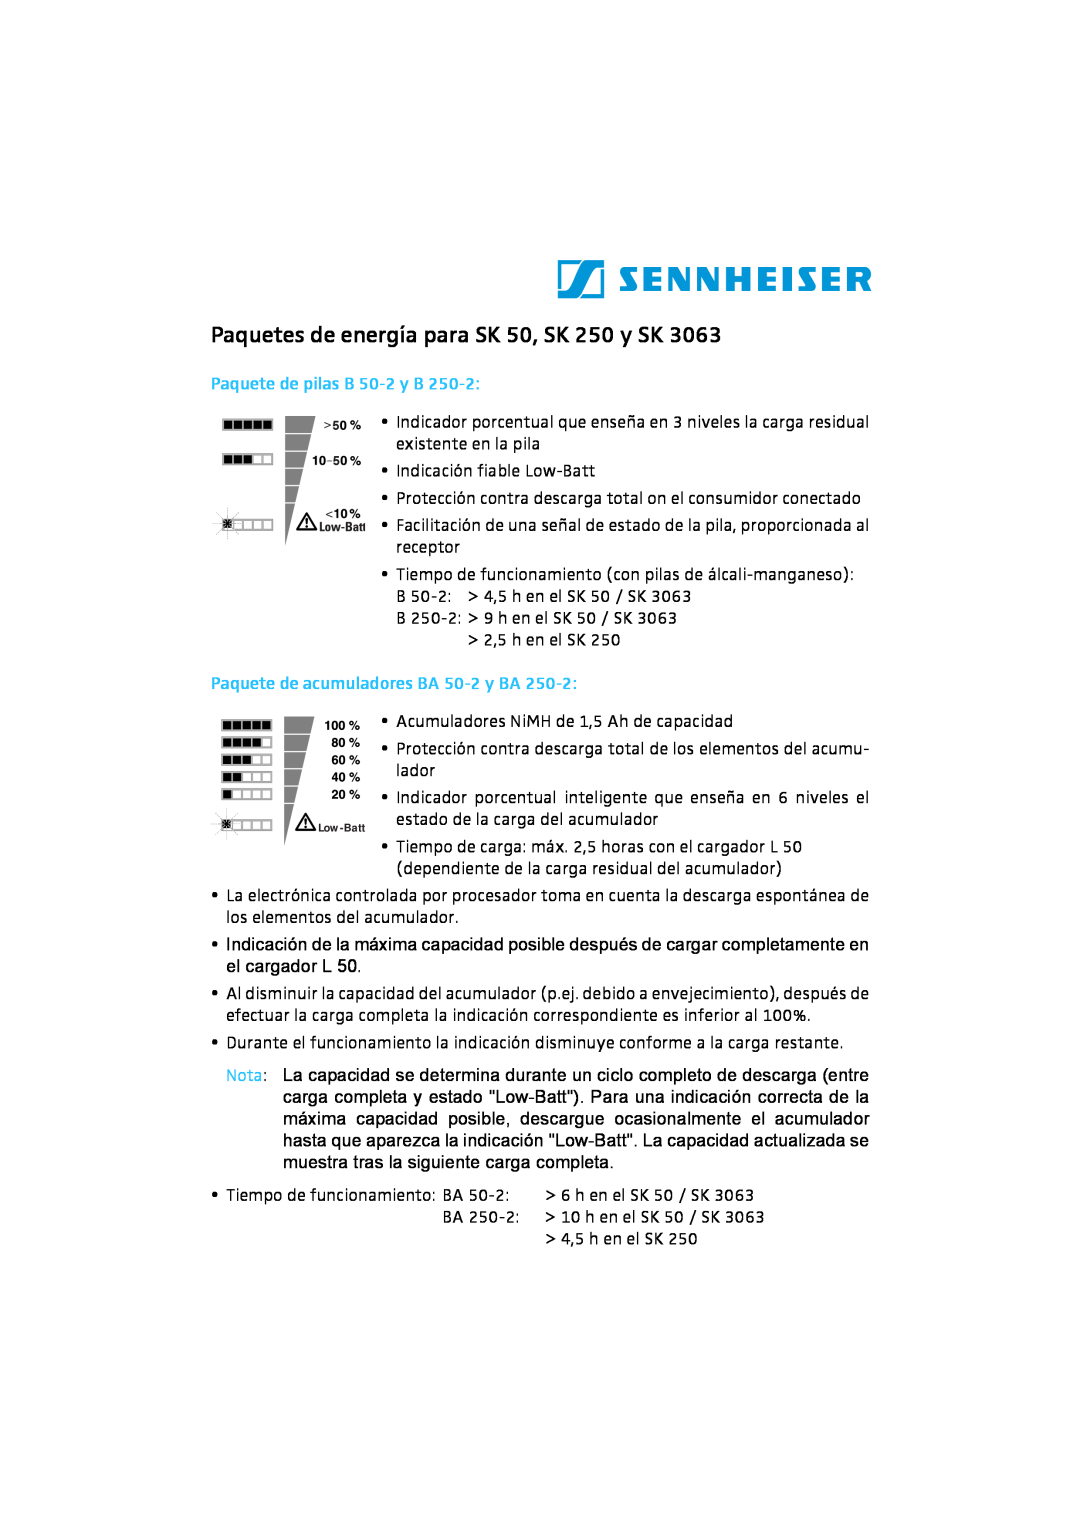 Sennheiser SK 3063 manual Paquetes de energía para SK 50, SK 250 y SK, Paquete de pilas B 50-2y B 